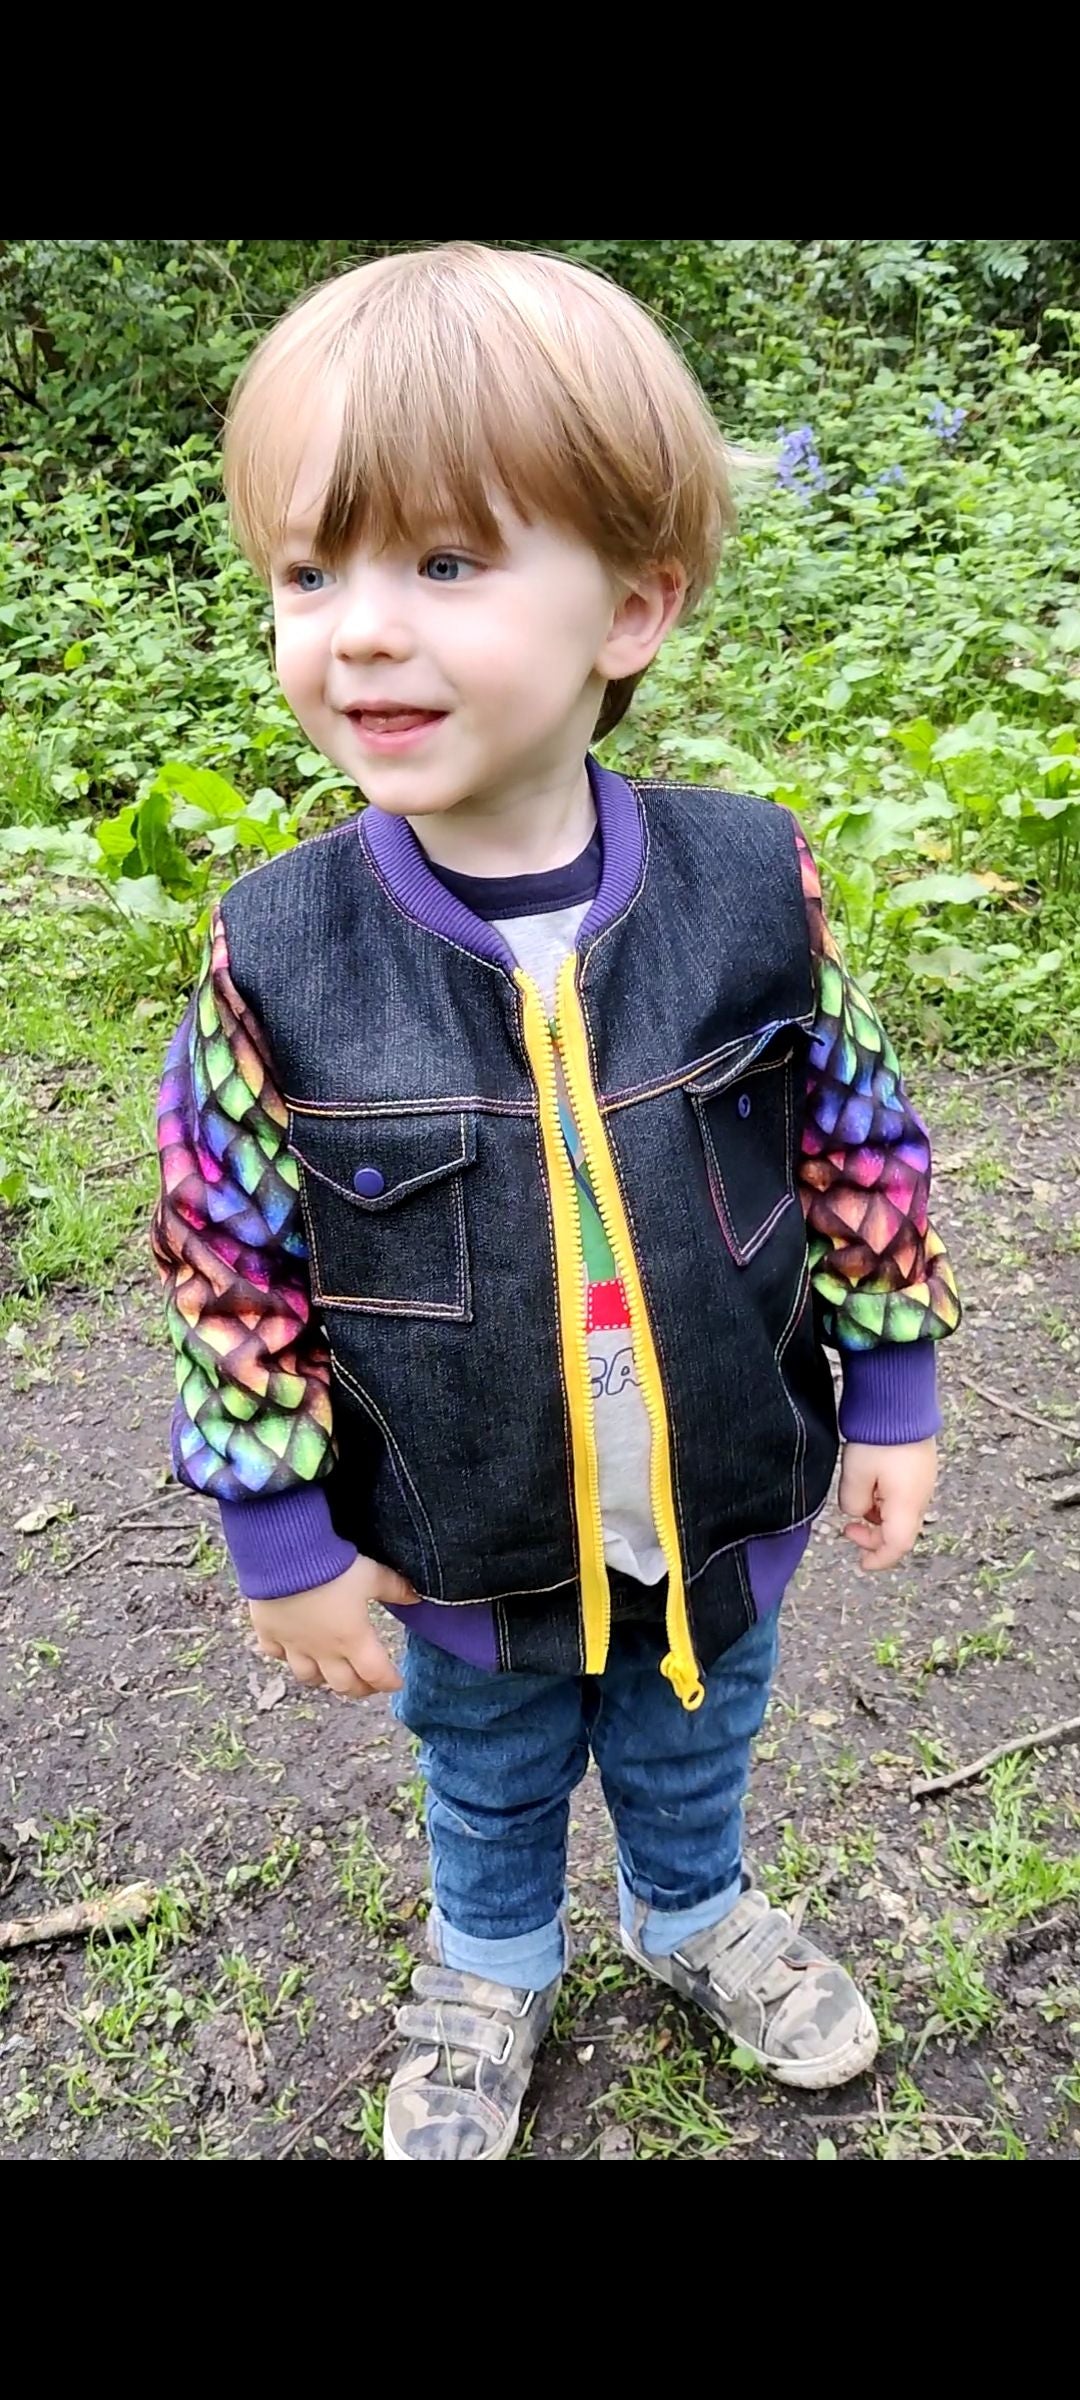 Kids Dutchie Jacket Pattern